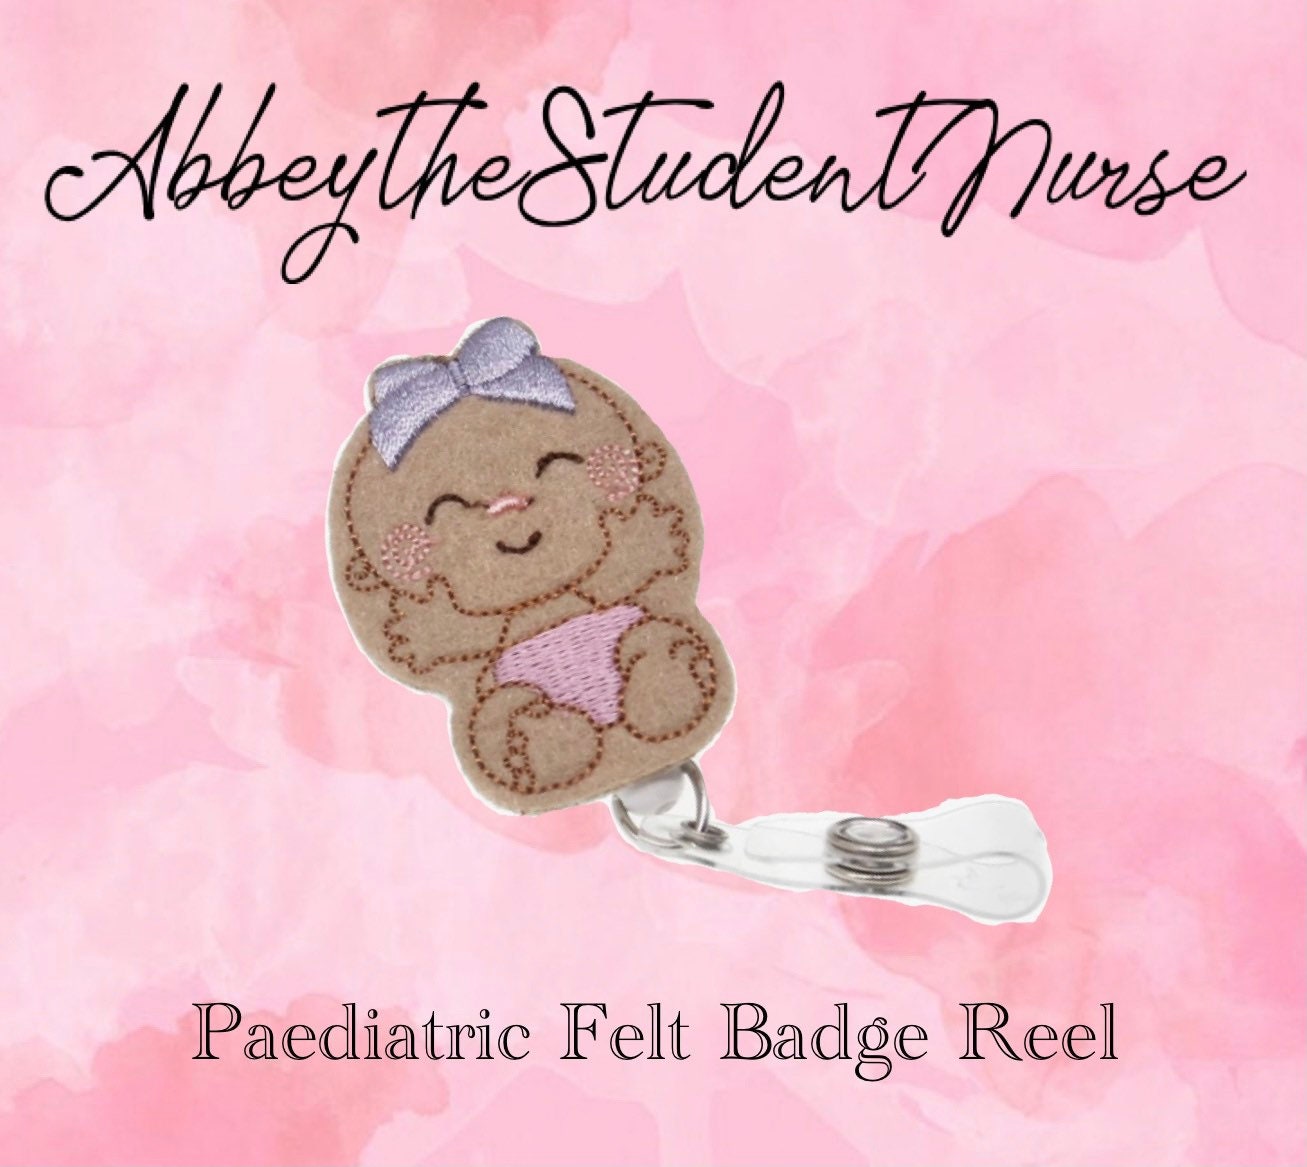 School Nurse Badge Reel, Apple Badge Reel, Nurse Badge Reel